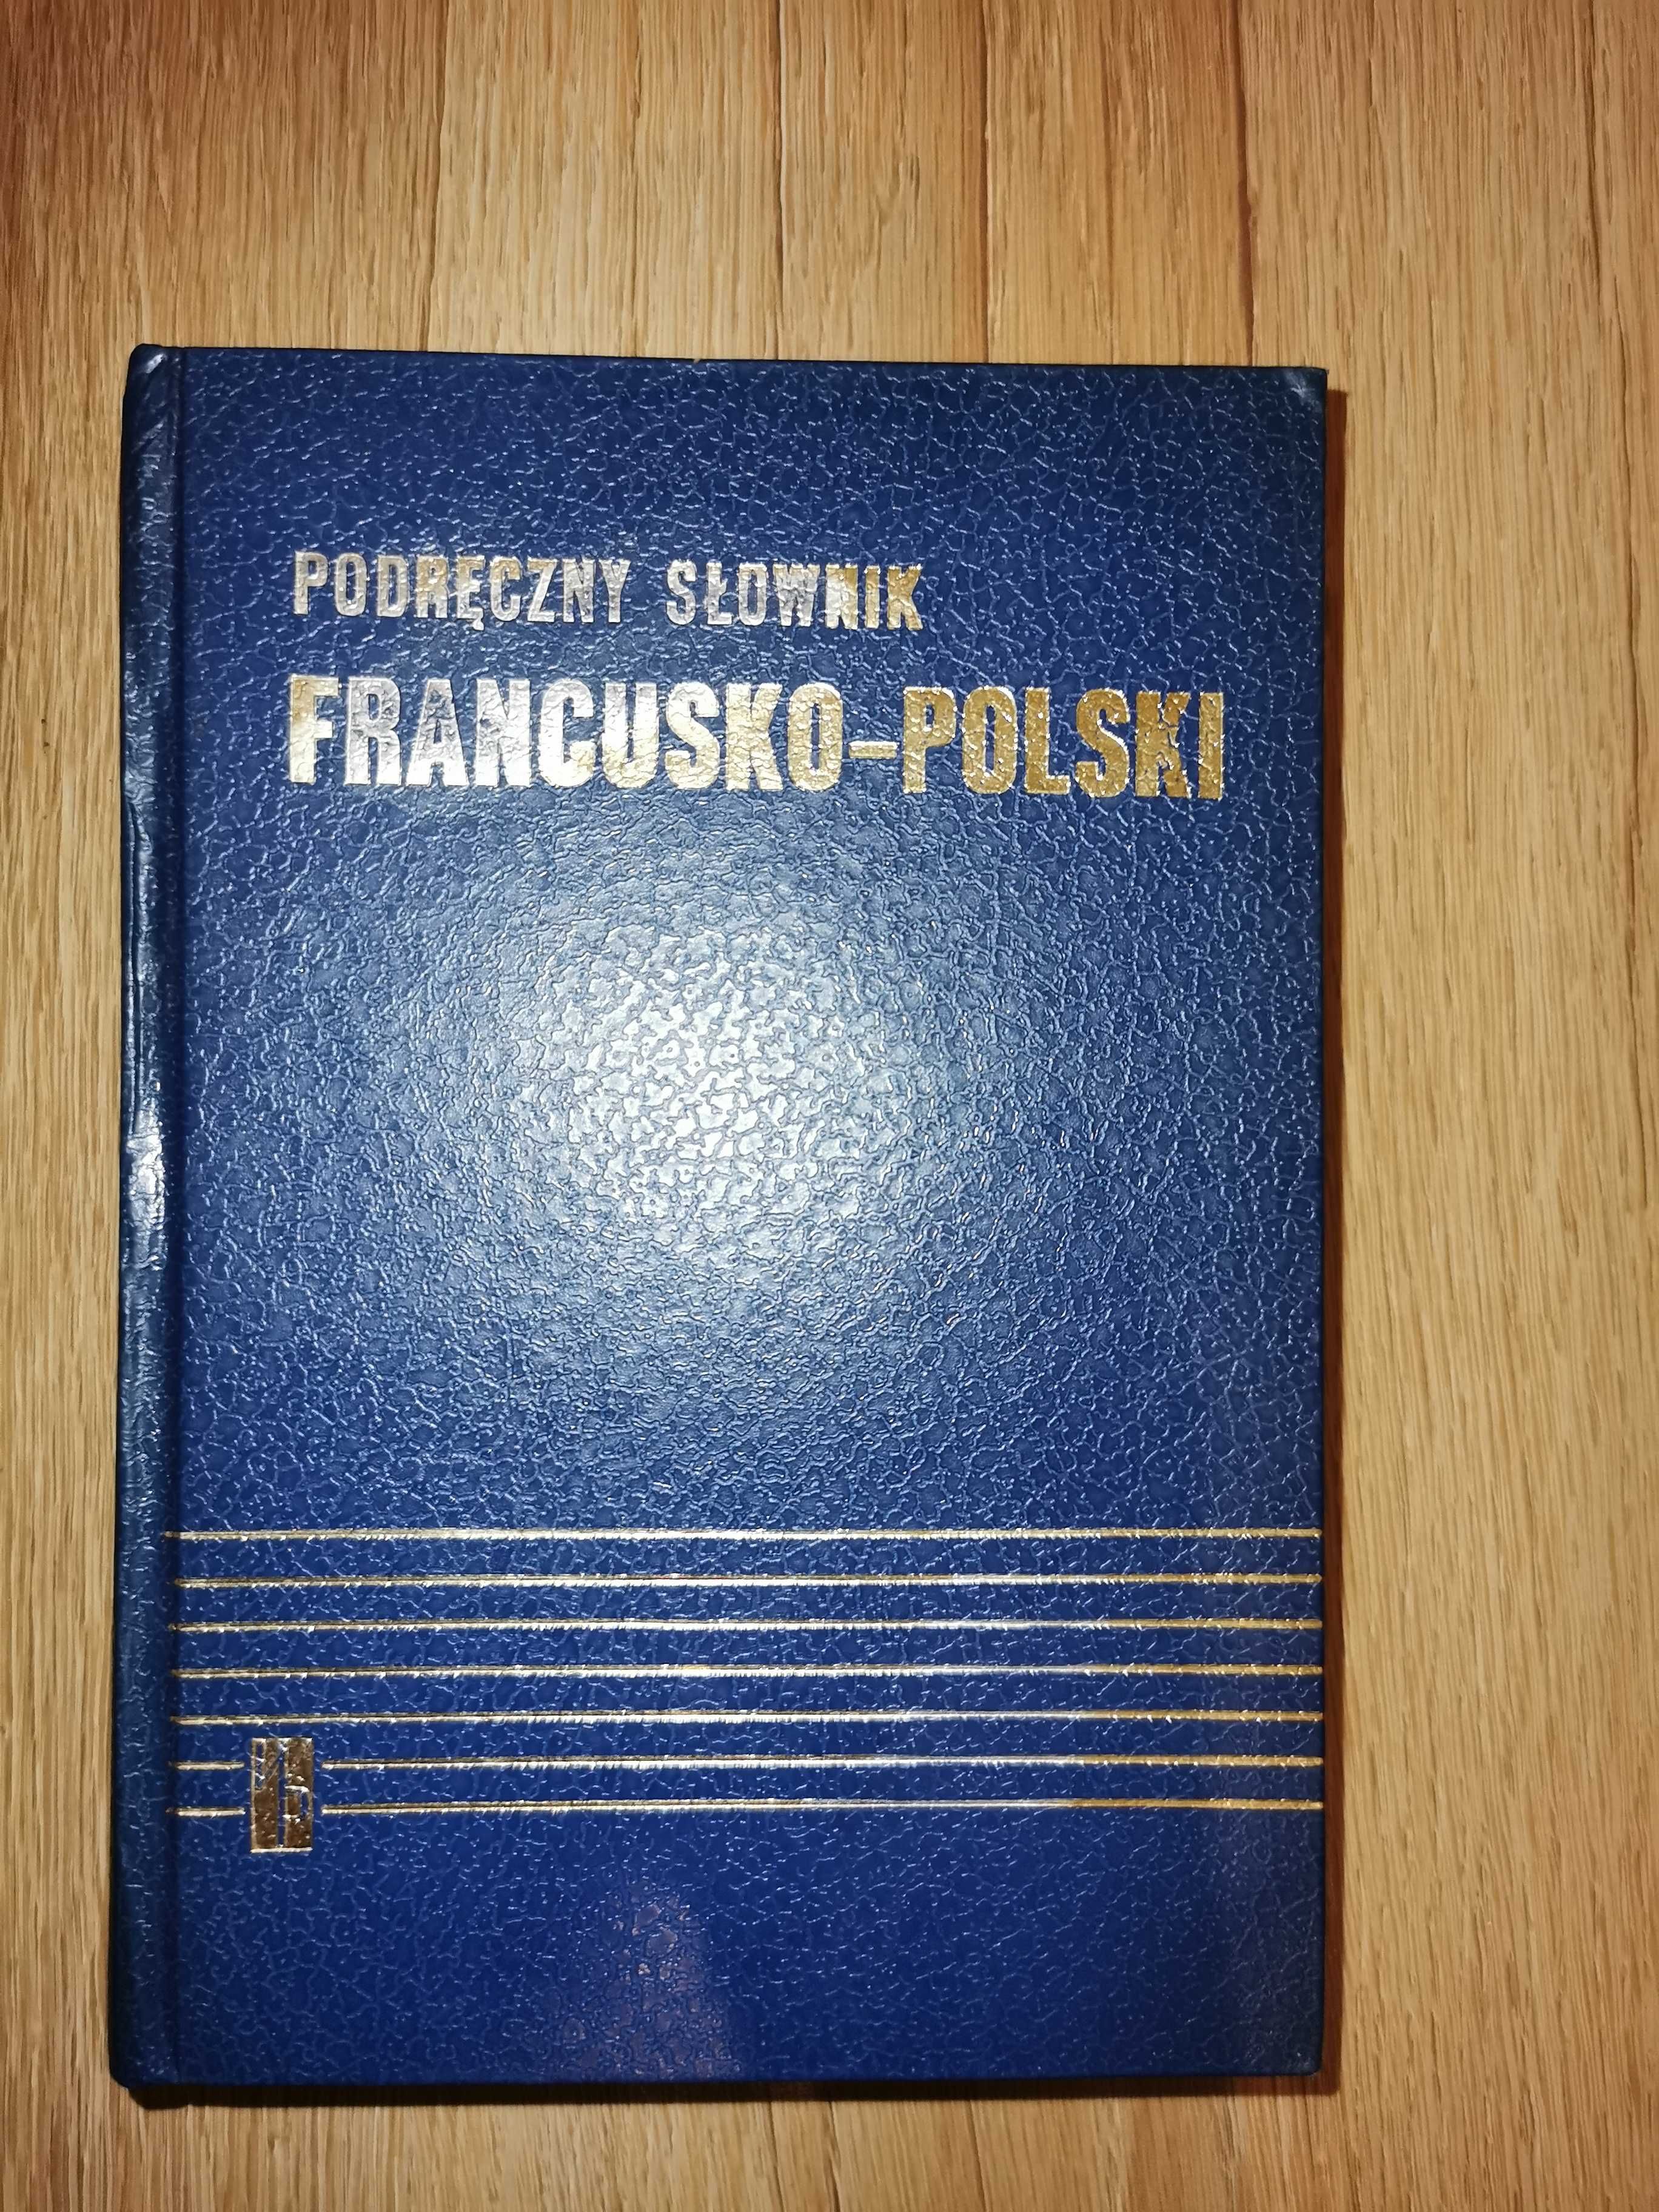 Bardzo gruby słownik francusko-polski ponad 1000 stron